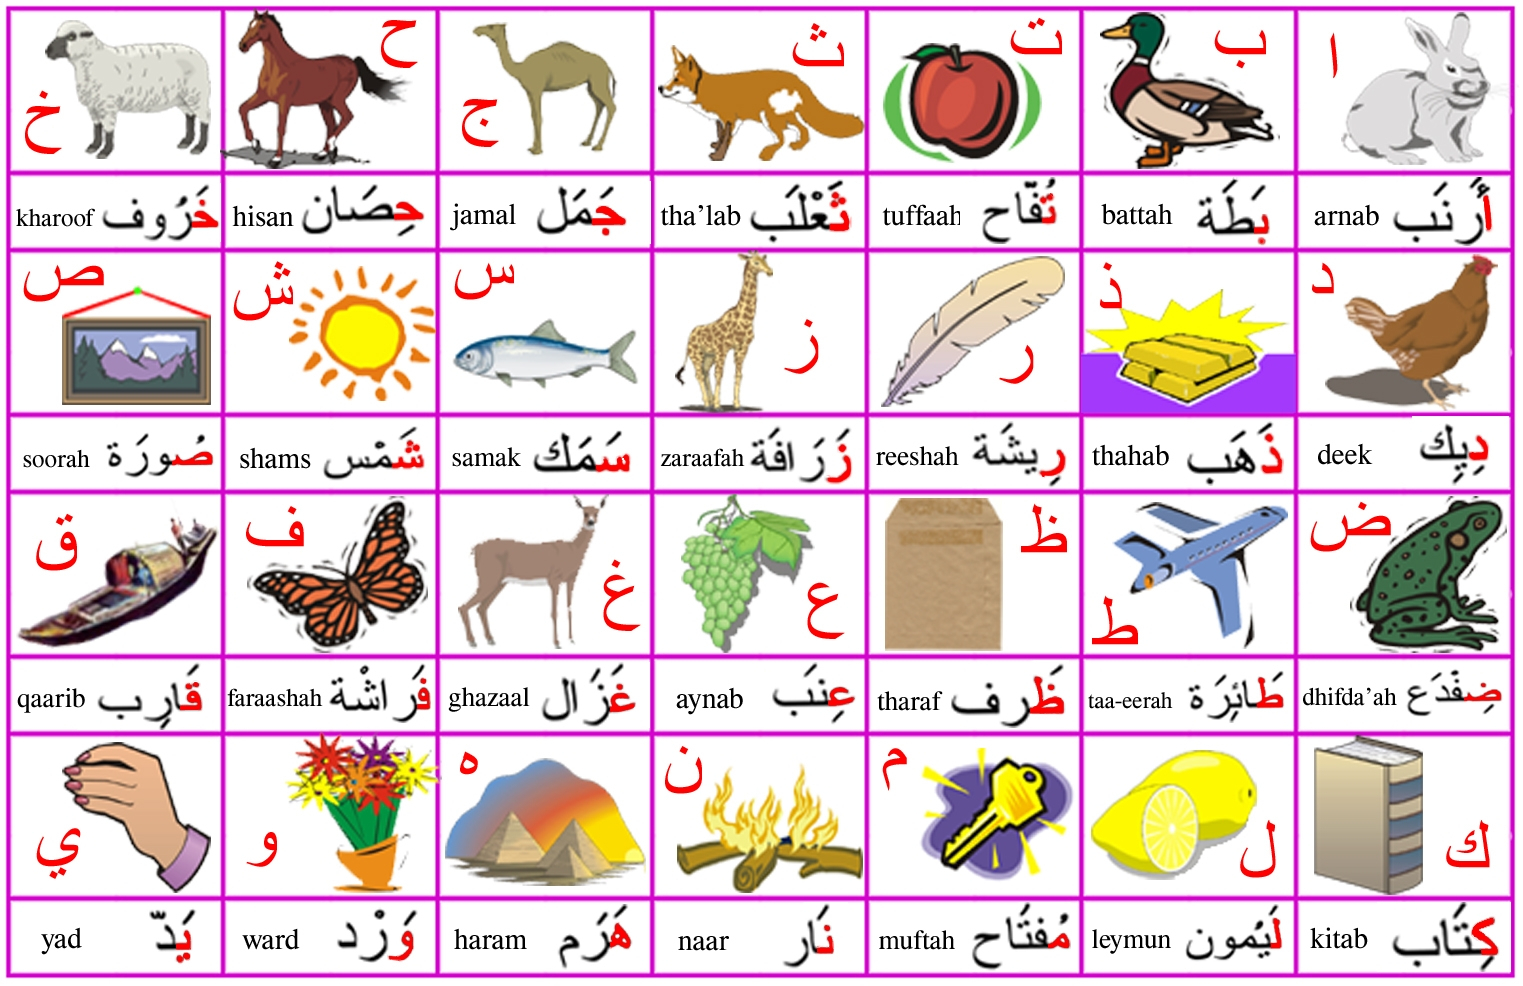 Arabic Alphabet Worksheets Grade 1 regarding Arabic Alphabet Worksheets Grade 1